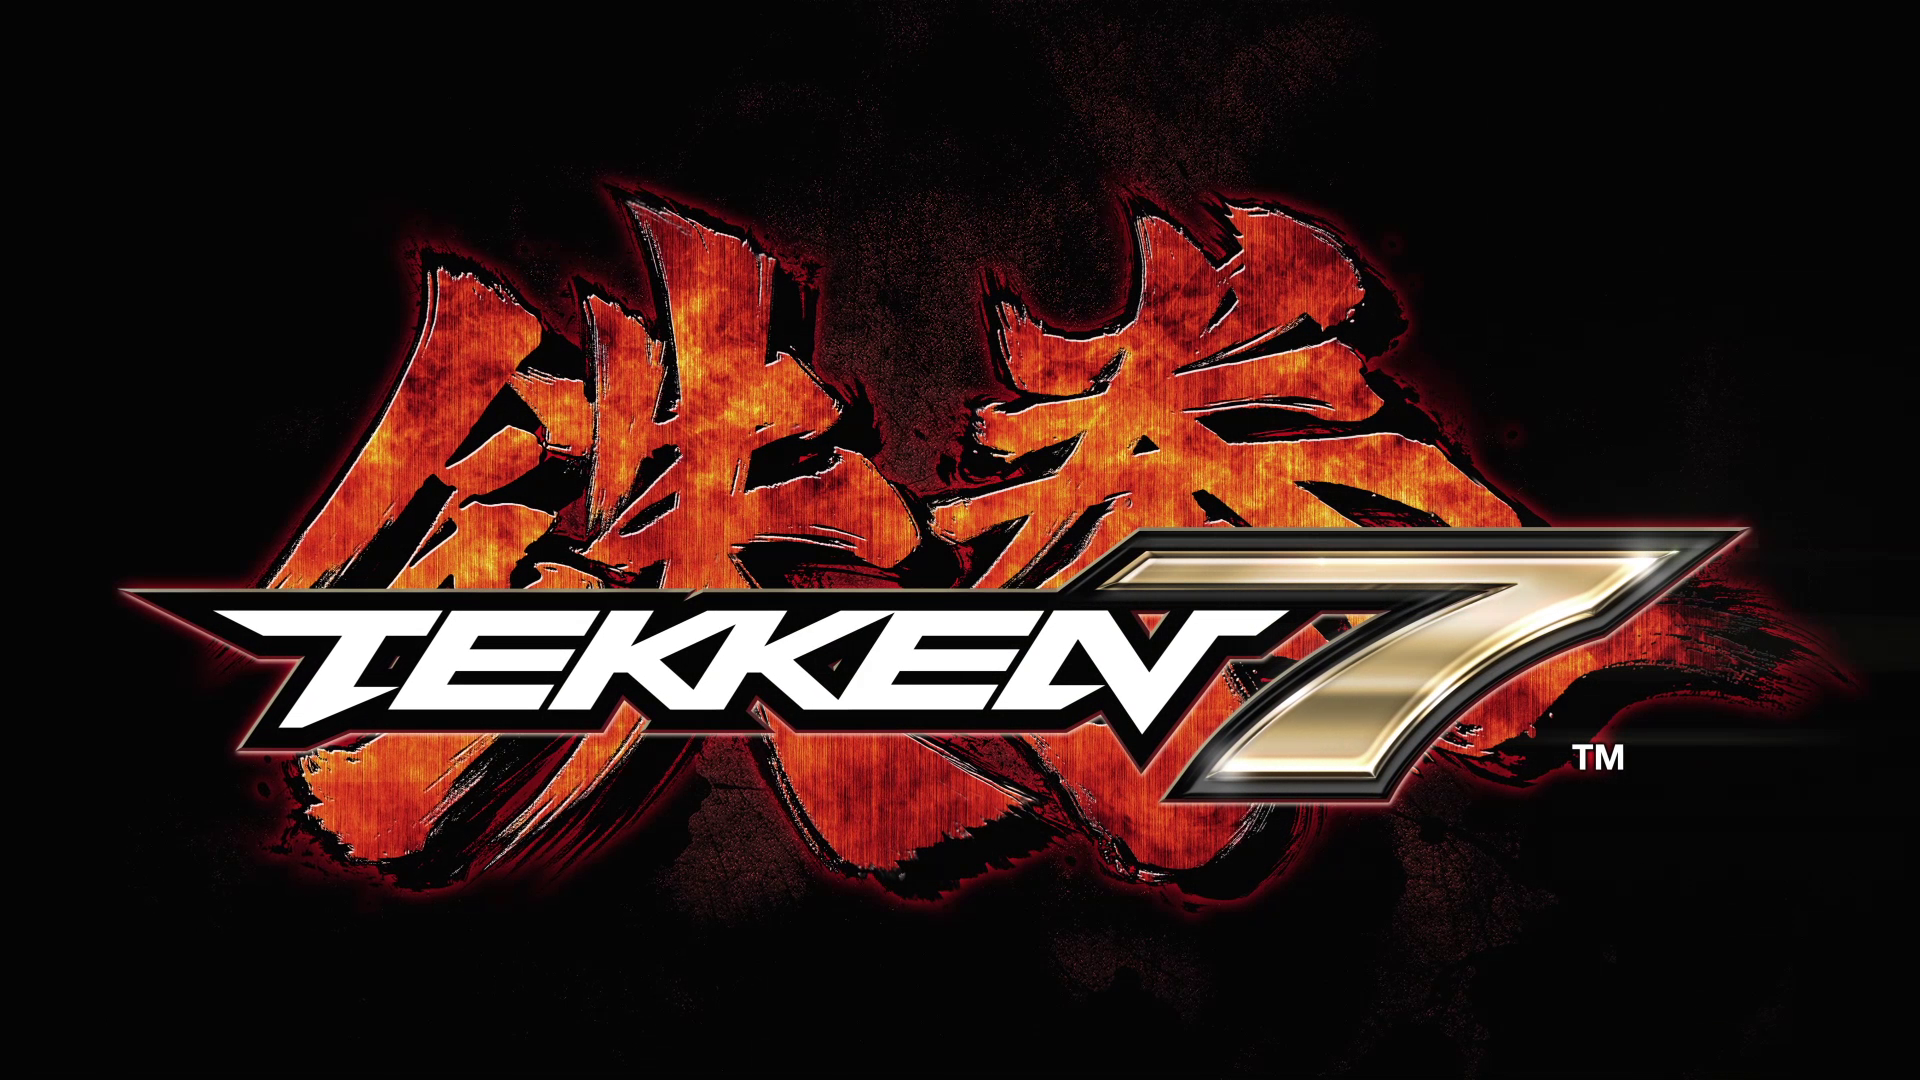 Tekken 7 Backgrounds, Compatible - PC, Mobile, Gadgets| 1920x1080 px